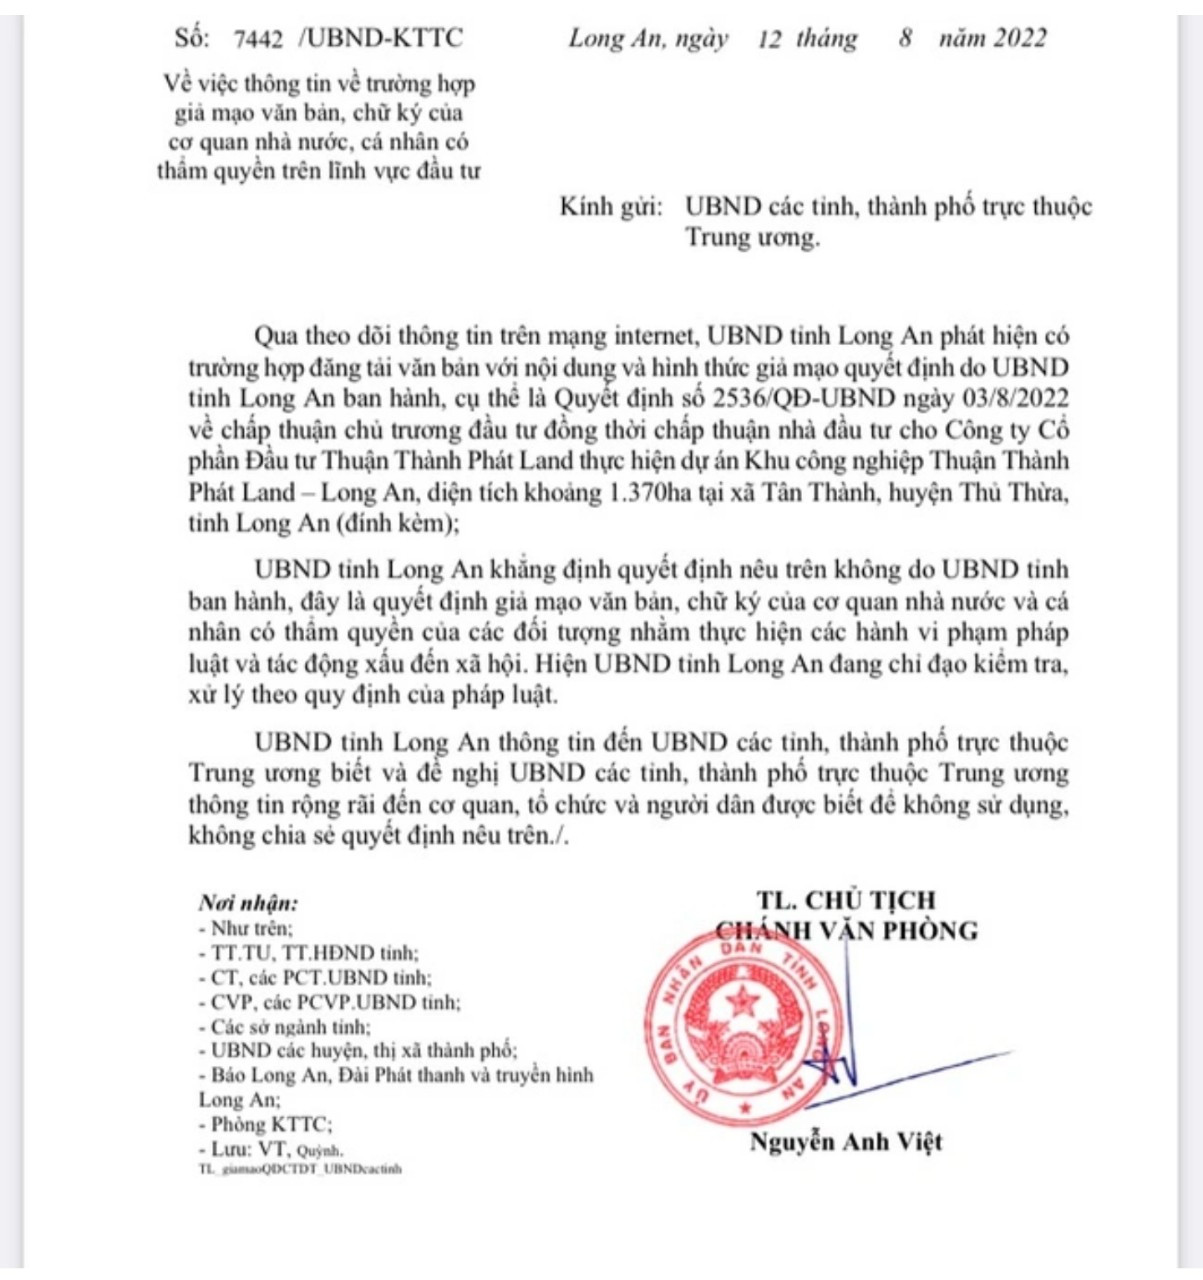 Văn bản 7442/UBND-KTTC vừa được ông Nguyễn Anh Việt – Chánh Văn phòng UBND tỉnh Long An ký, ban hành hôm 12/8.